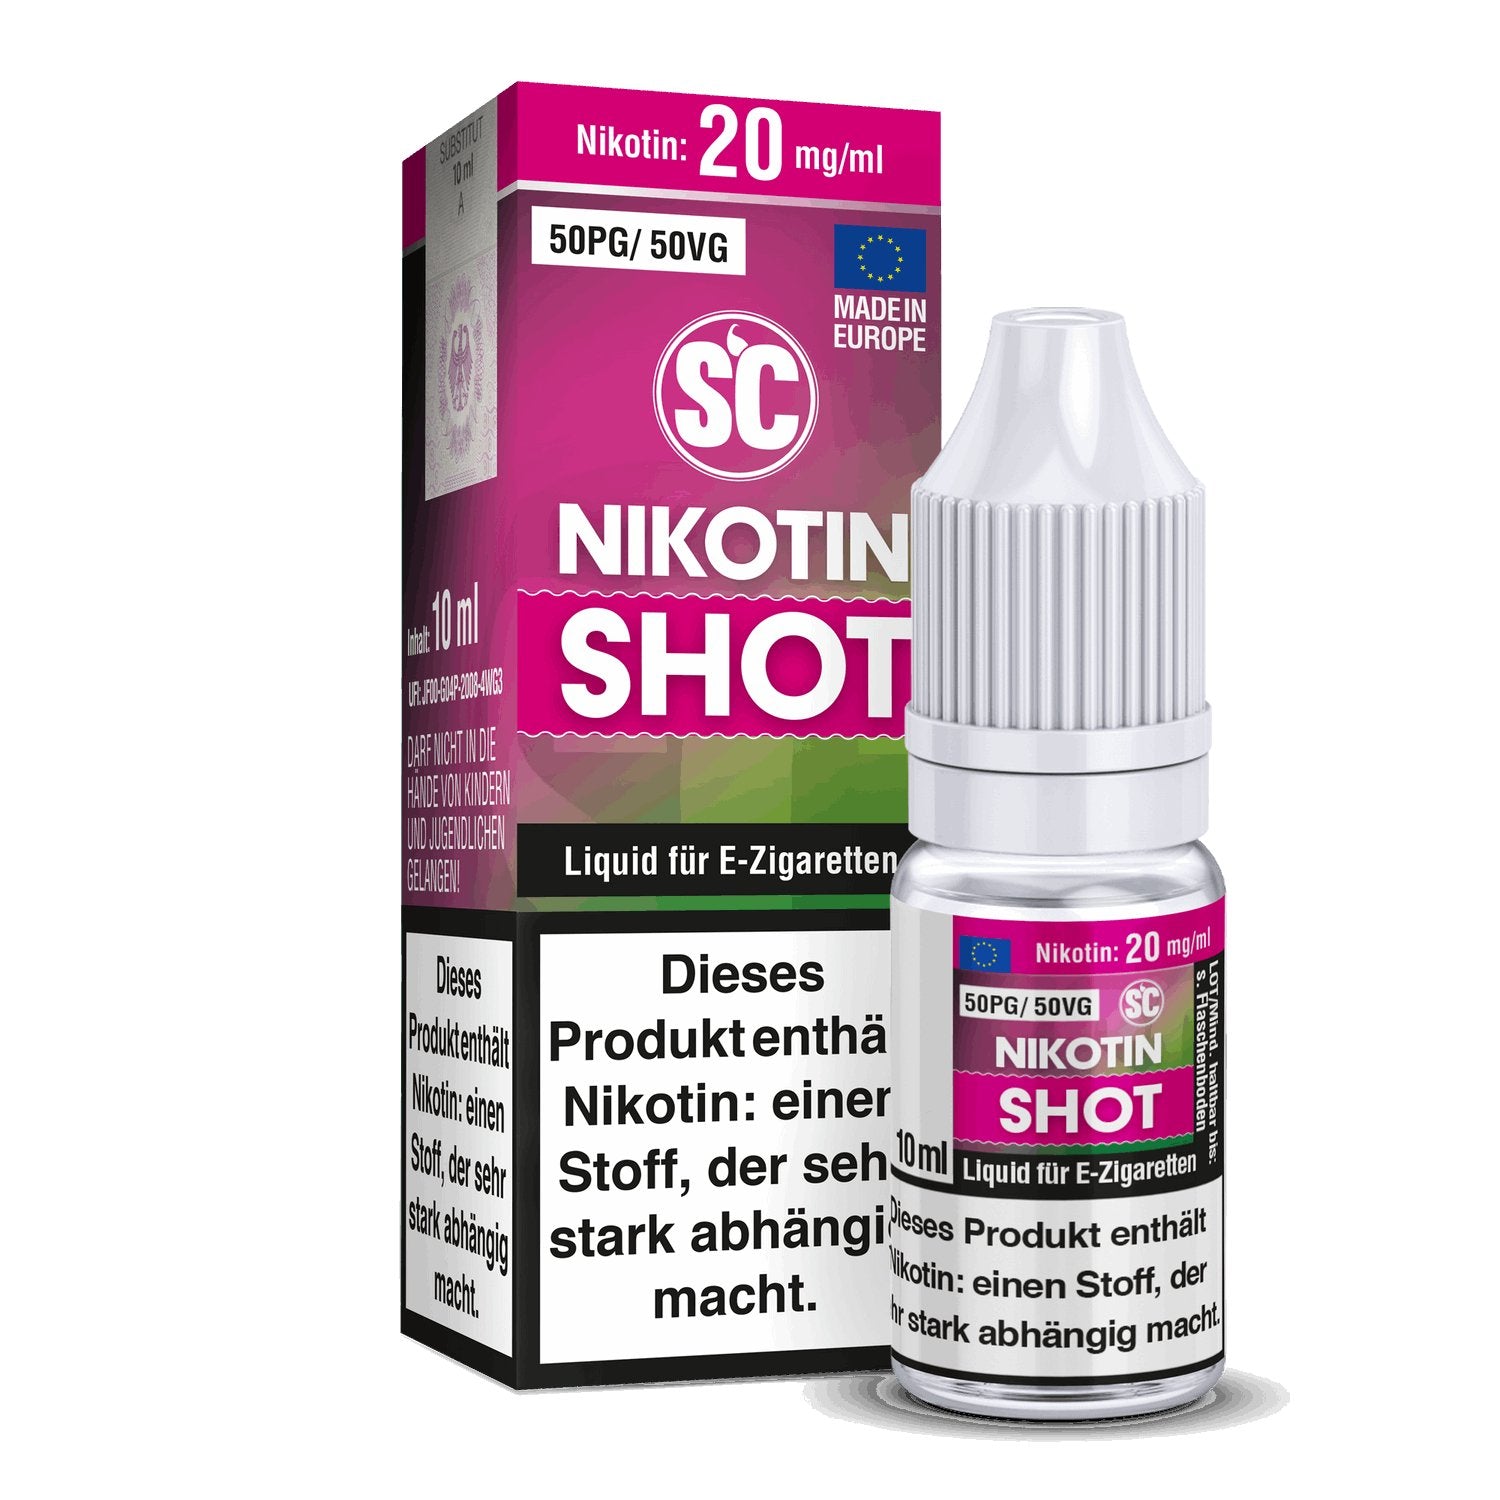 SC - Nikotin Shot - 10ml (50PG/50VG) - 50PG / 50VG 1er Packung 20 mg/ml- Vapes4you